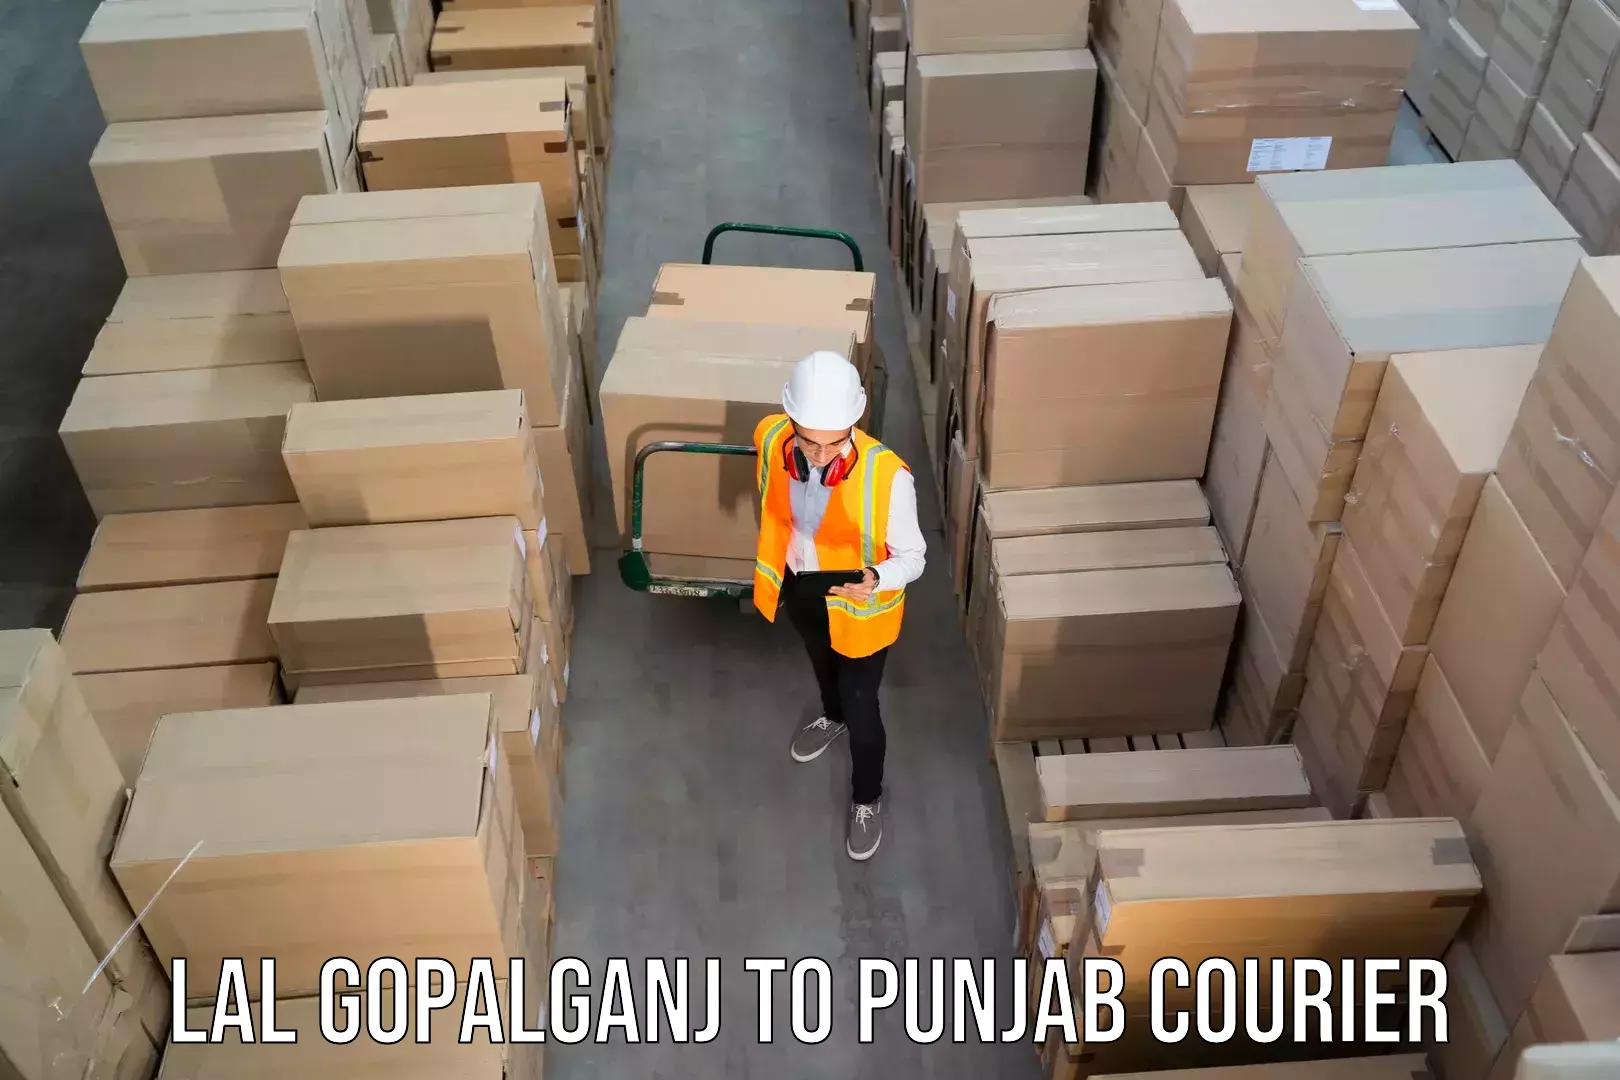 Global shipping networks Lal Gopalganj to Jalandhar